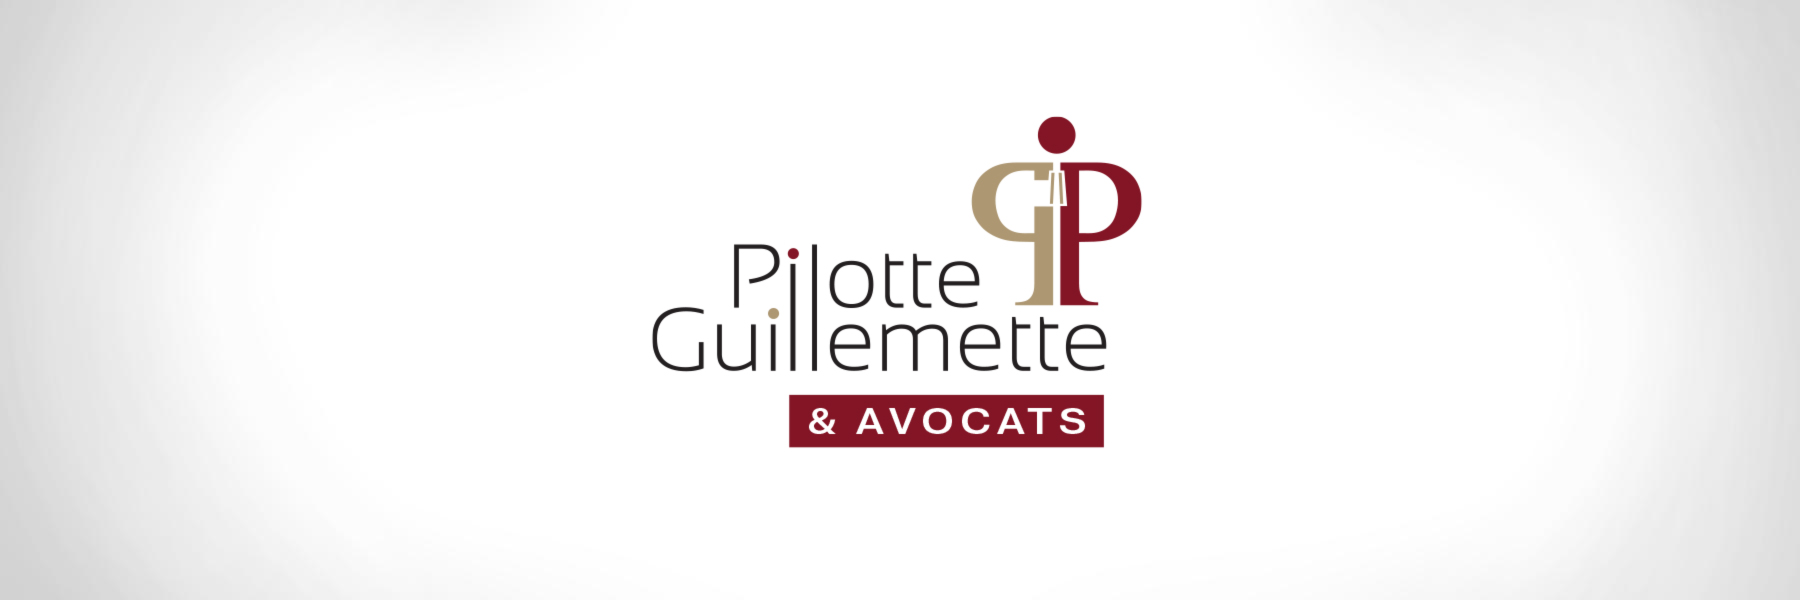 Pilotte, Guillemette & Avocats - Logo